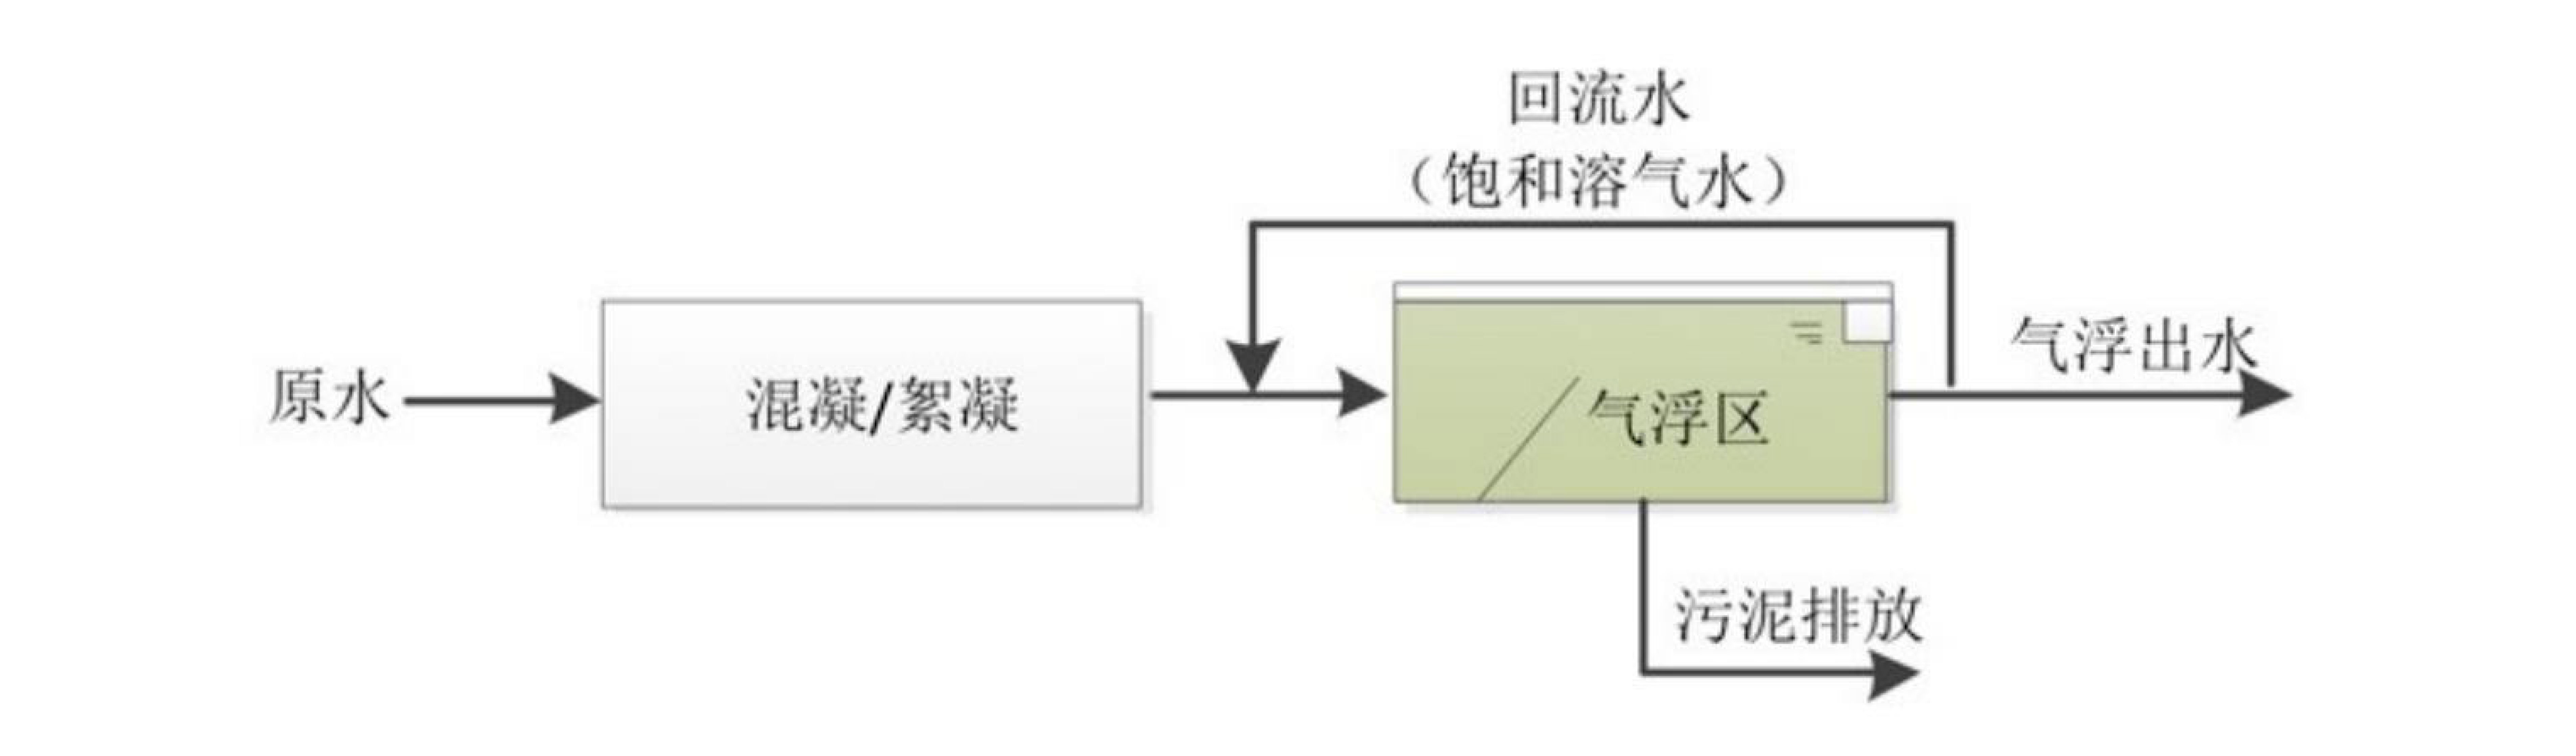 气浮池工艺流程图_武汉市熊谷科技有限公司